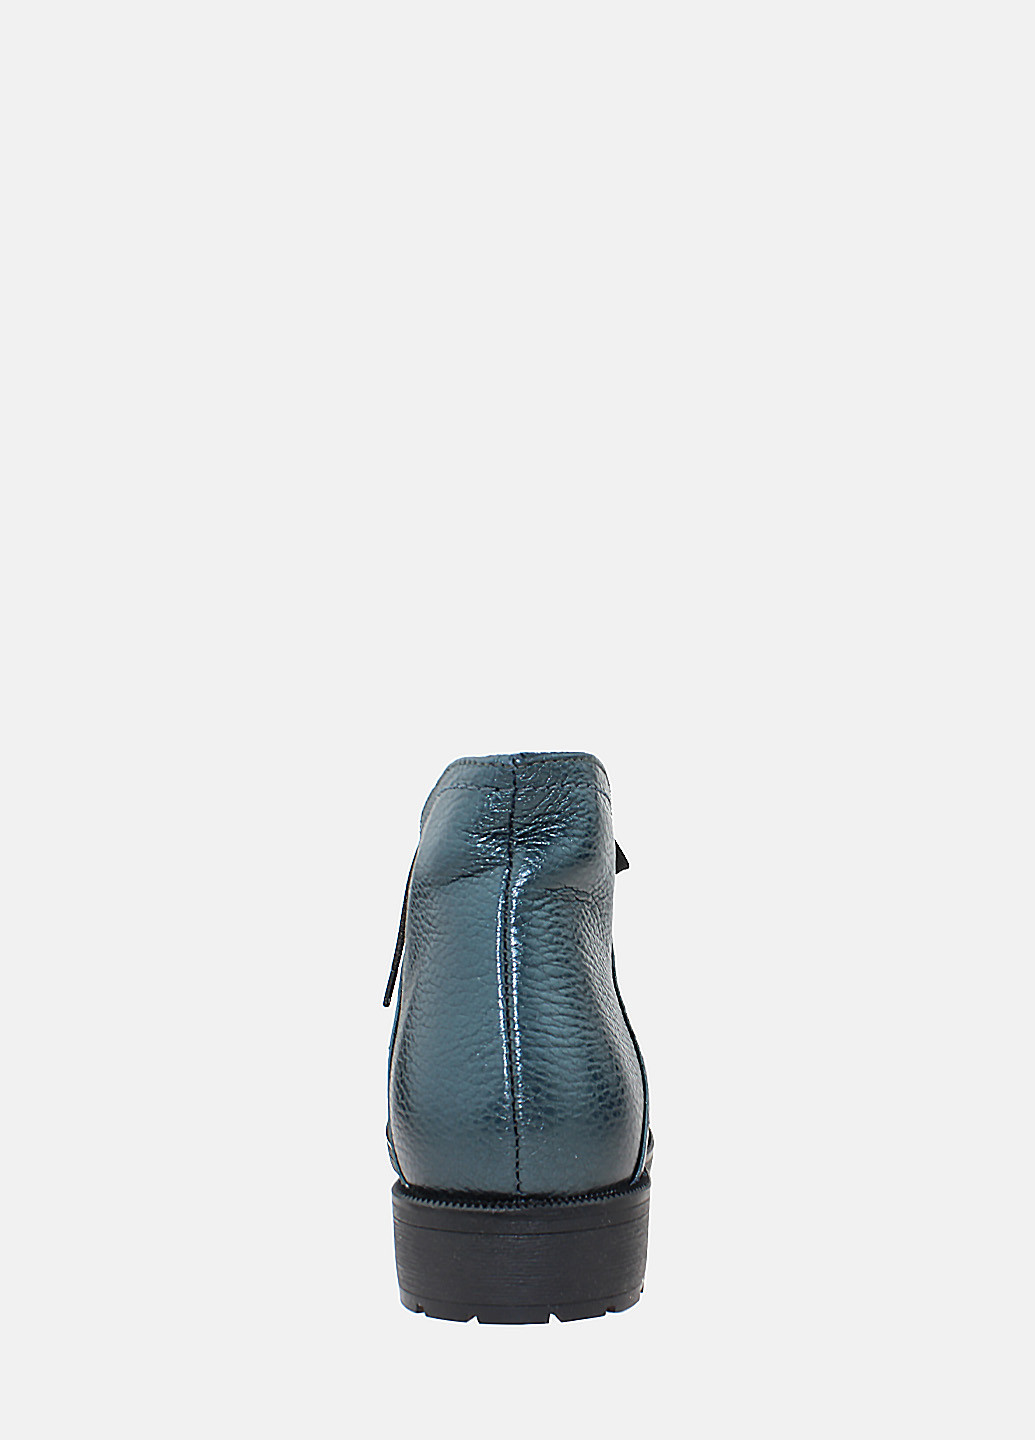 Осенние ботинки rr8569-96-22 синий Romax